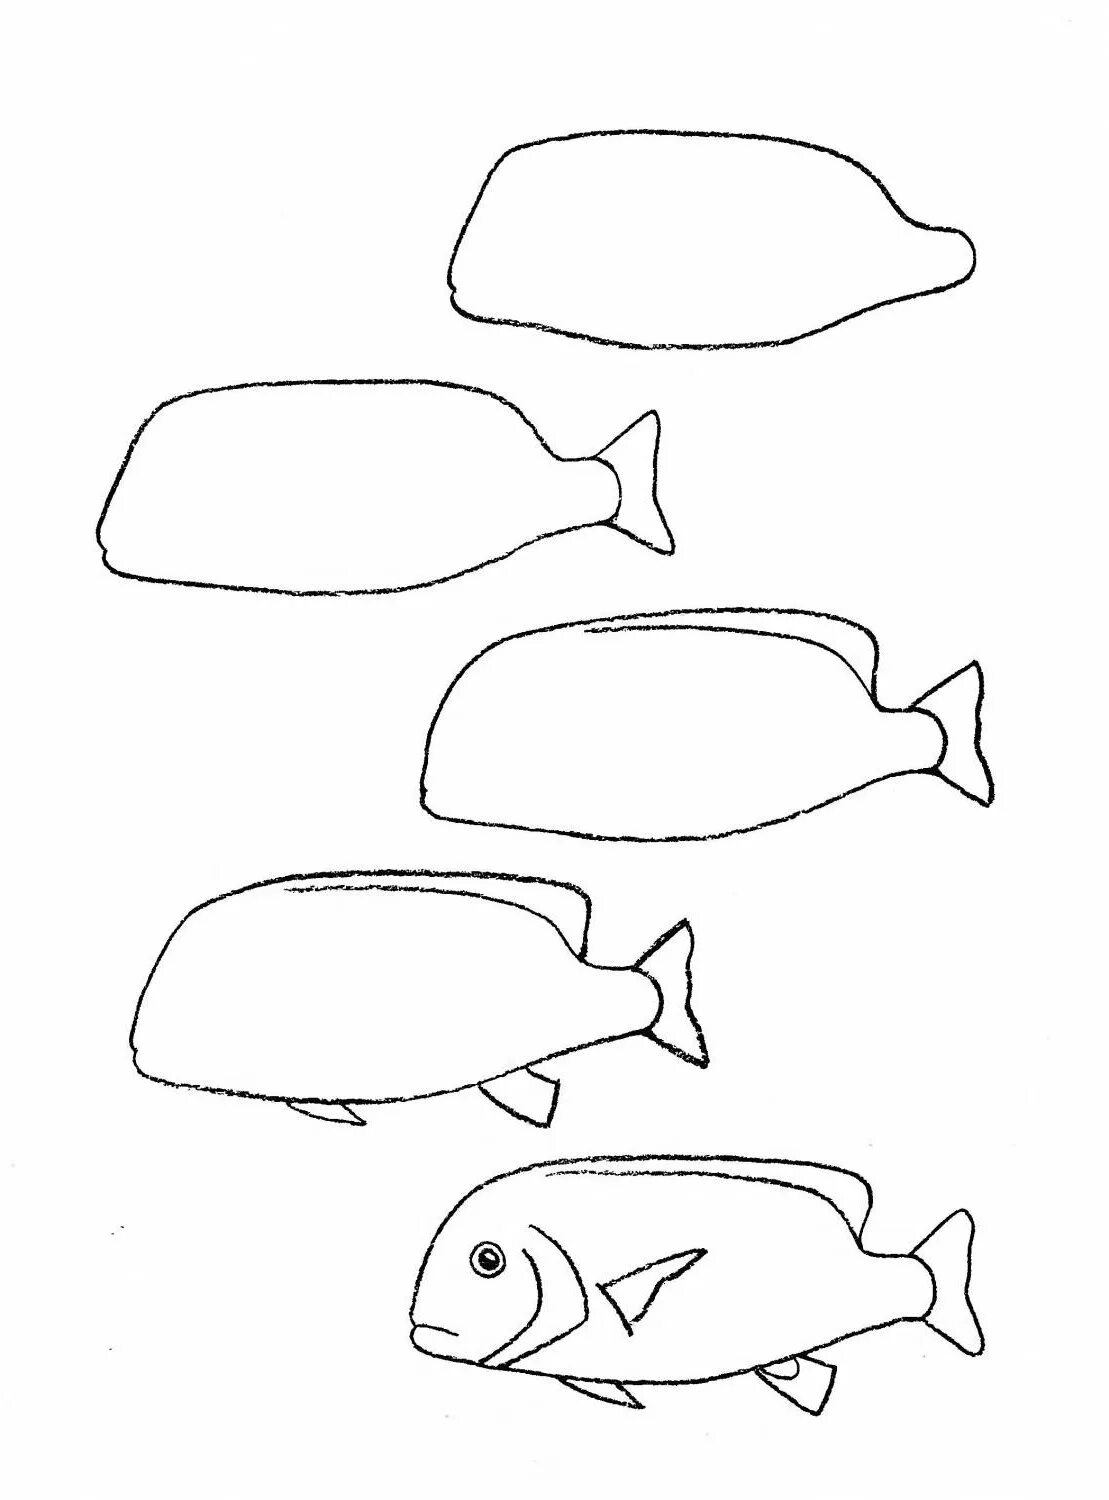 Рисование рыбки. Поэтапное рисование рыбы. Пошаговое рисование рыбки. Поэтапный рисунок рыбы. Нарисовать рисунок рыбу